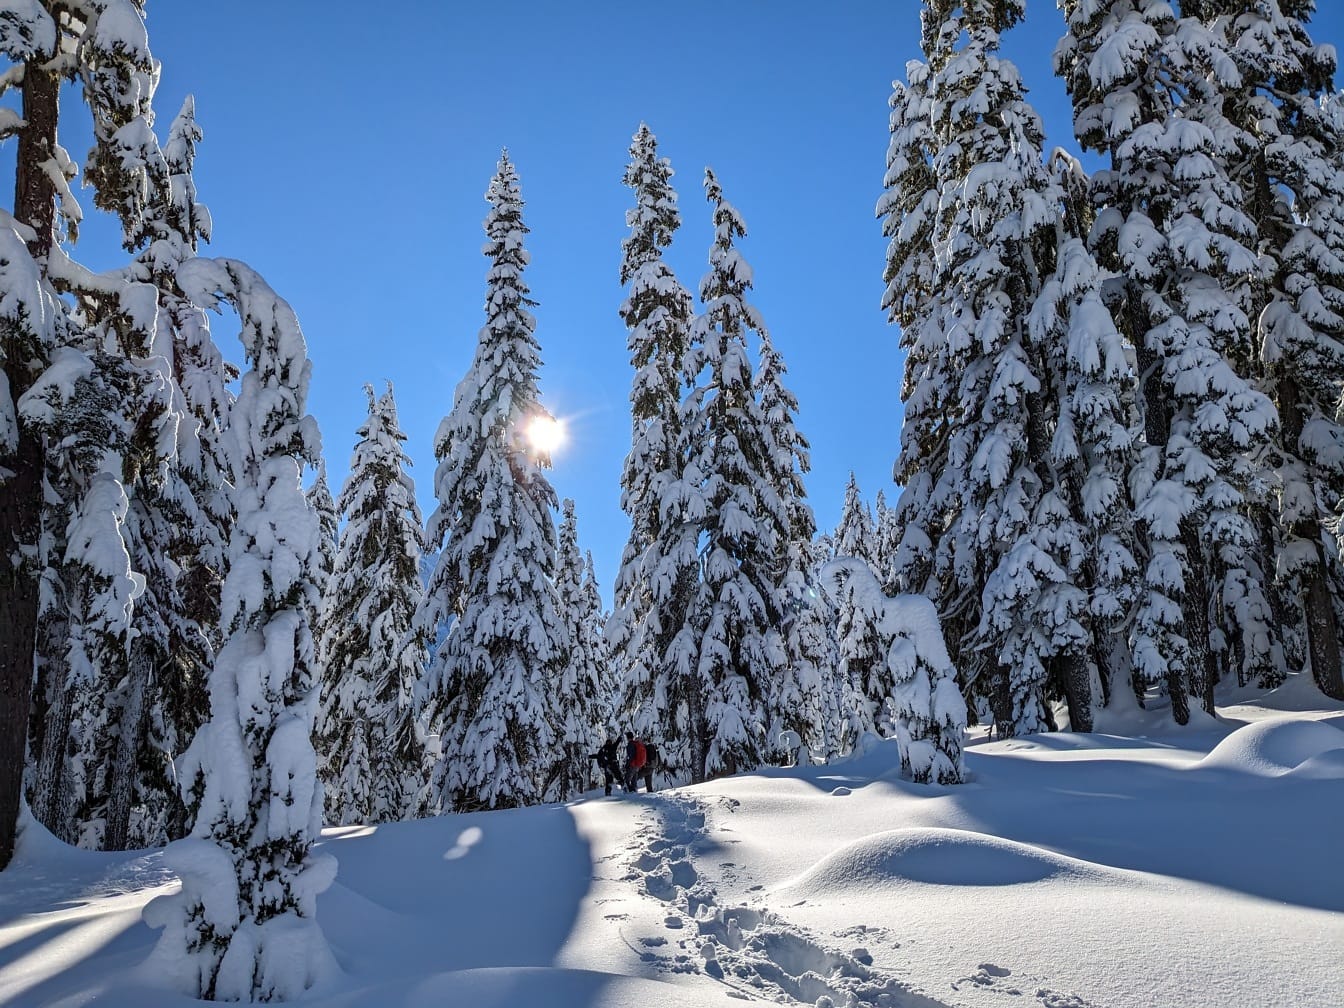 Par fjellklatrere som går gjennom dyp snø i snødekt skog